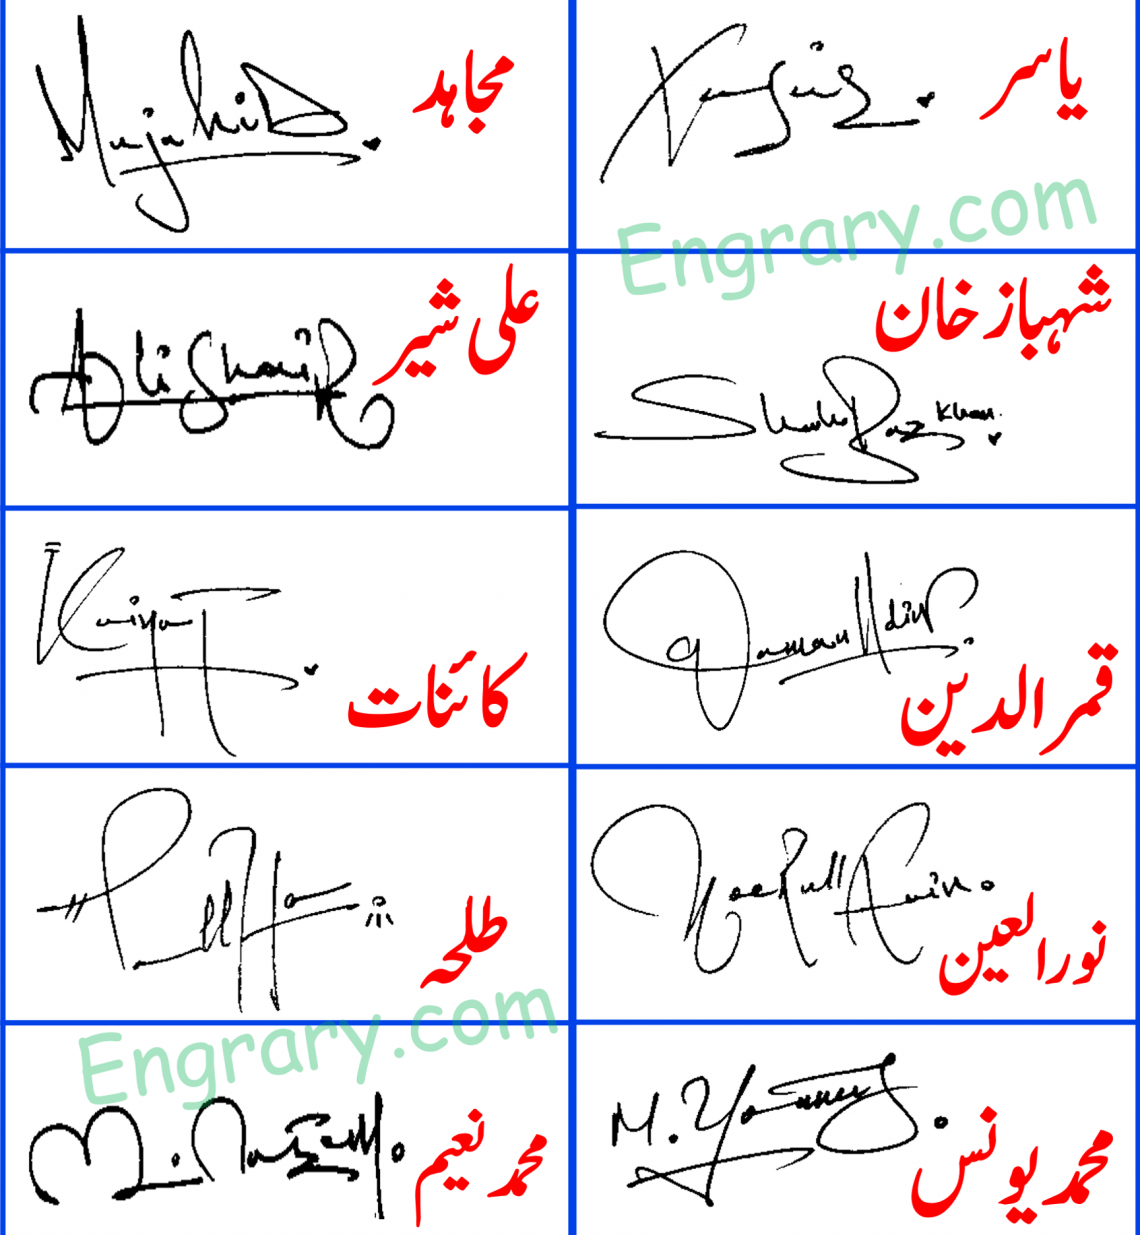 httpshandmade signature